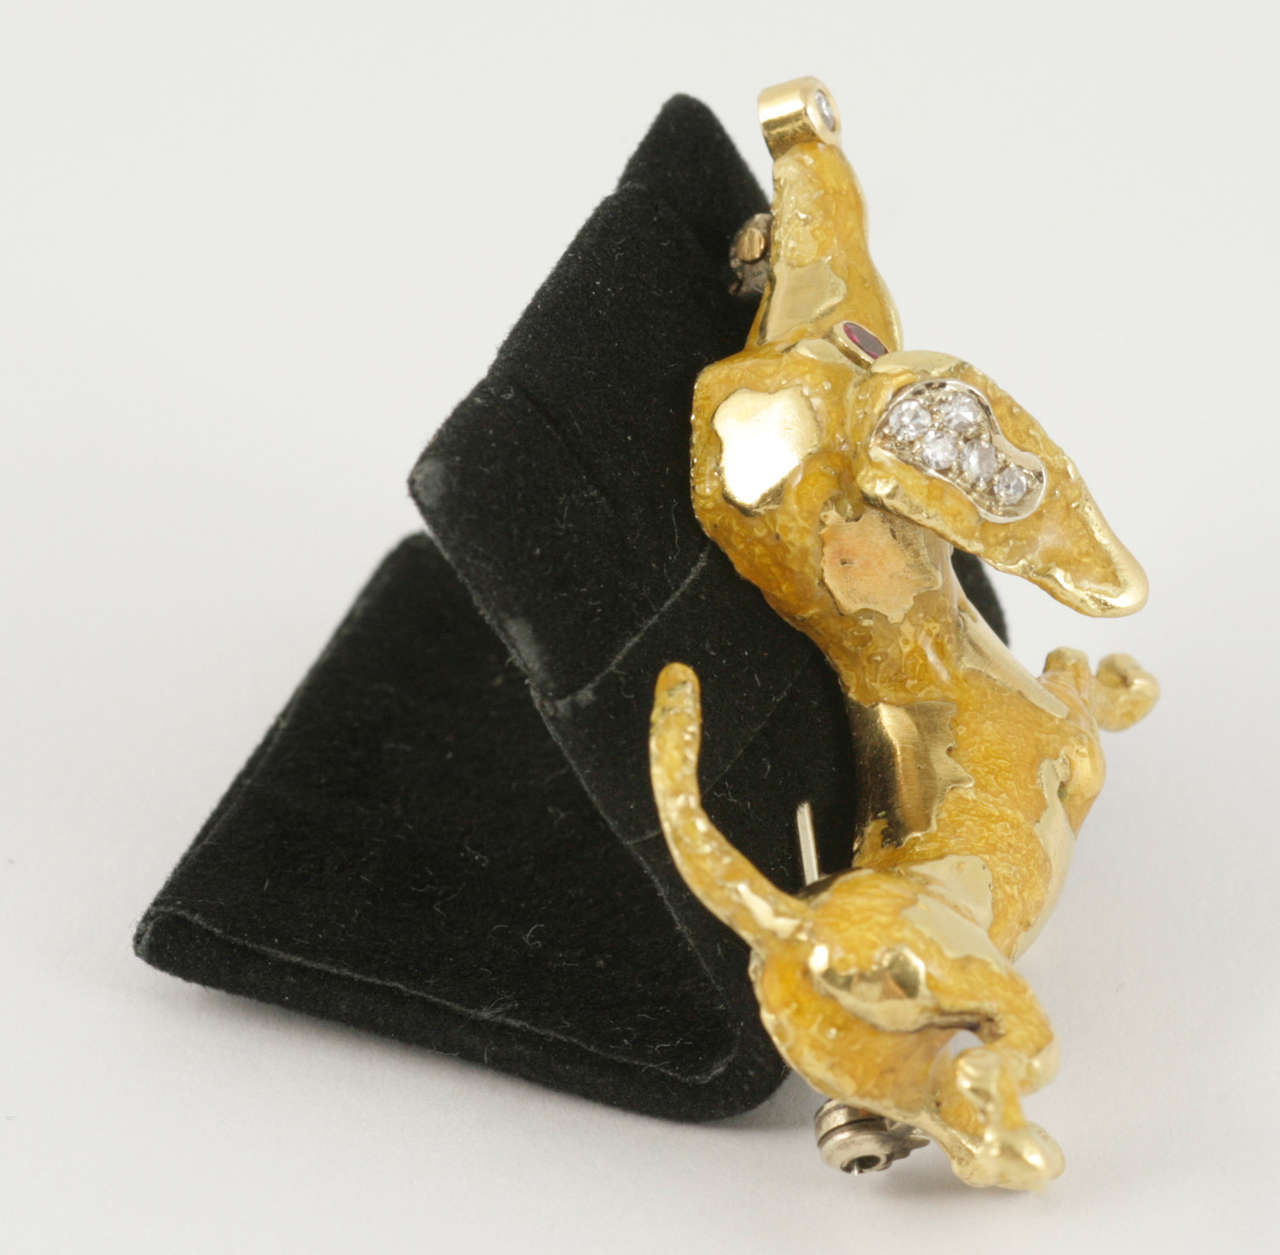 Modern Frascarolo gem set enamel gold dachshund Brooch